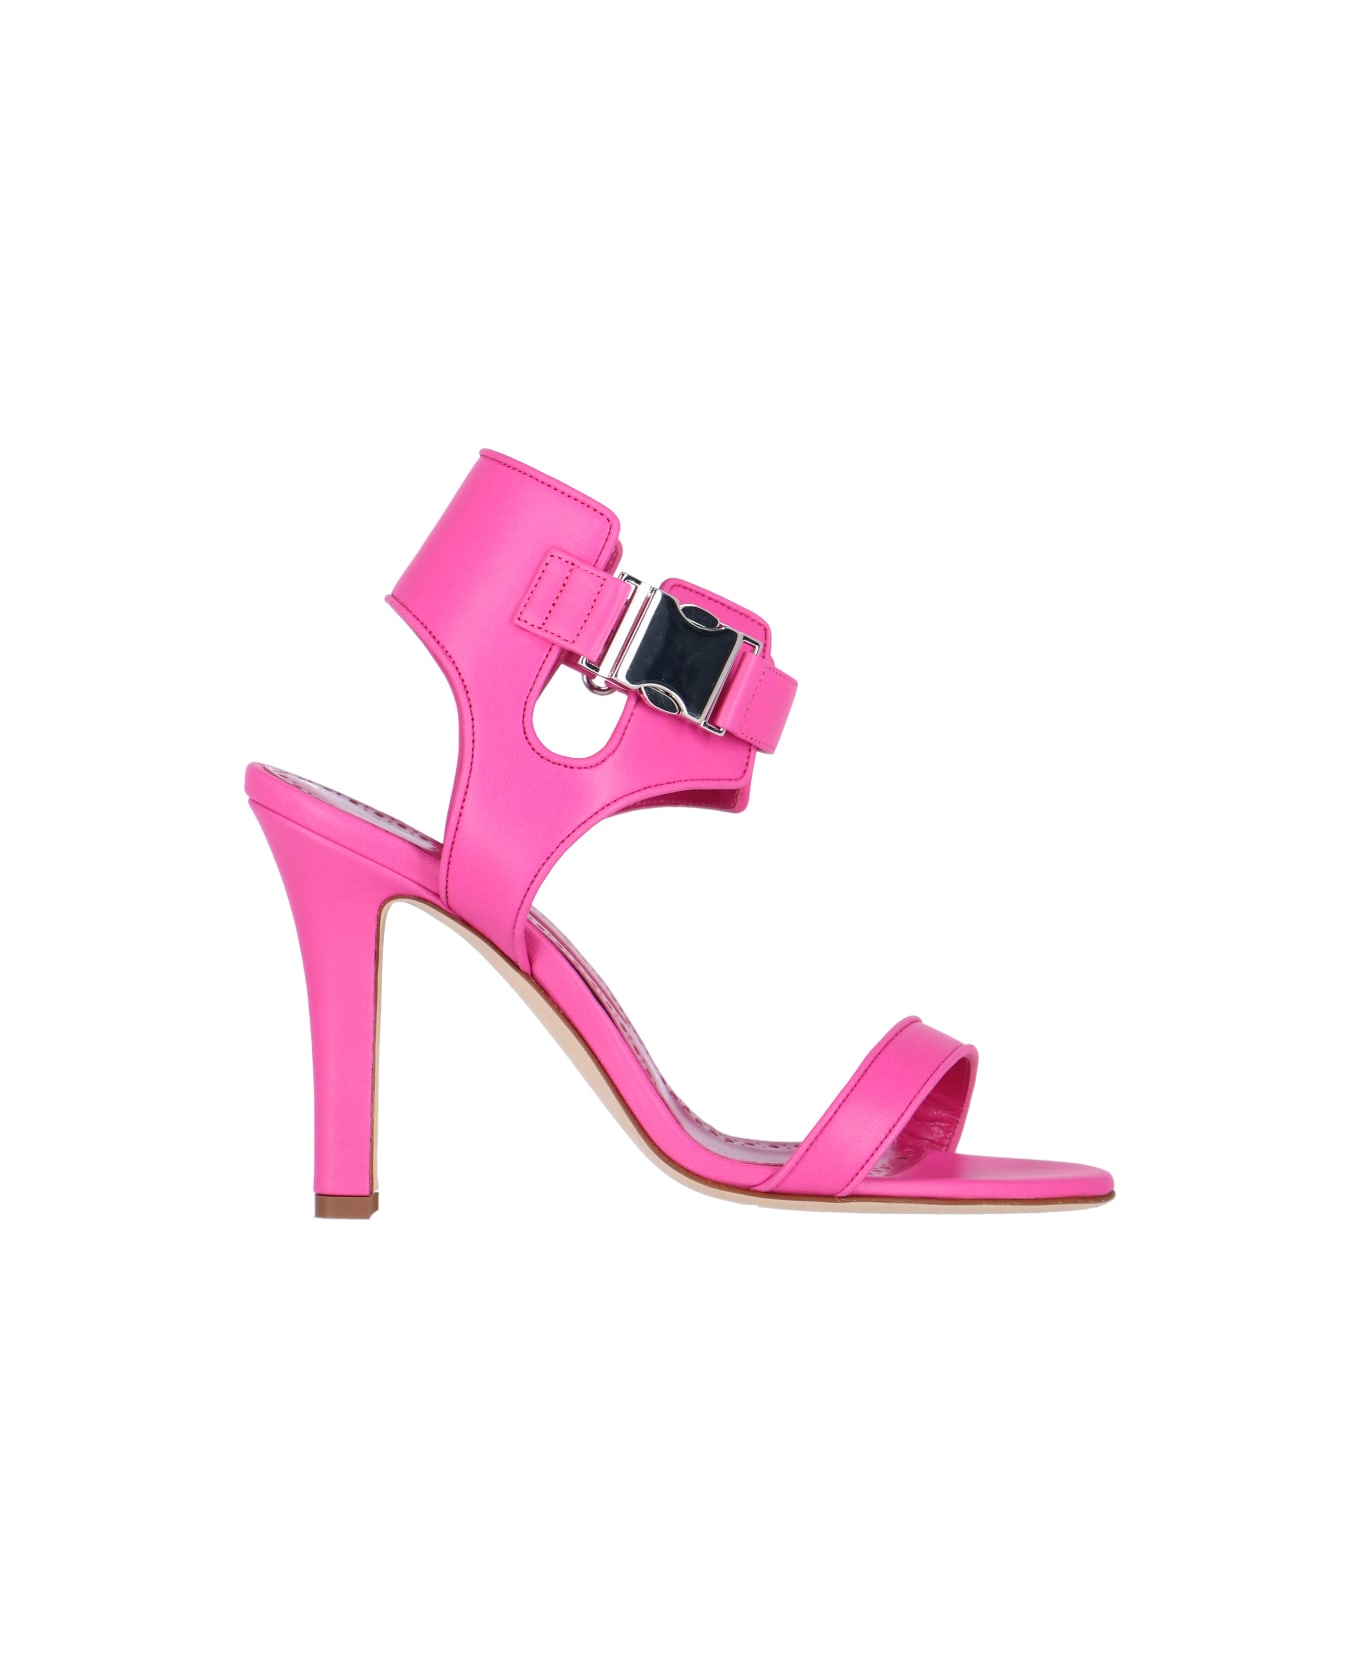 Manolo Blahnik 'pollux' Sandals - Pink